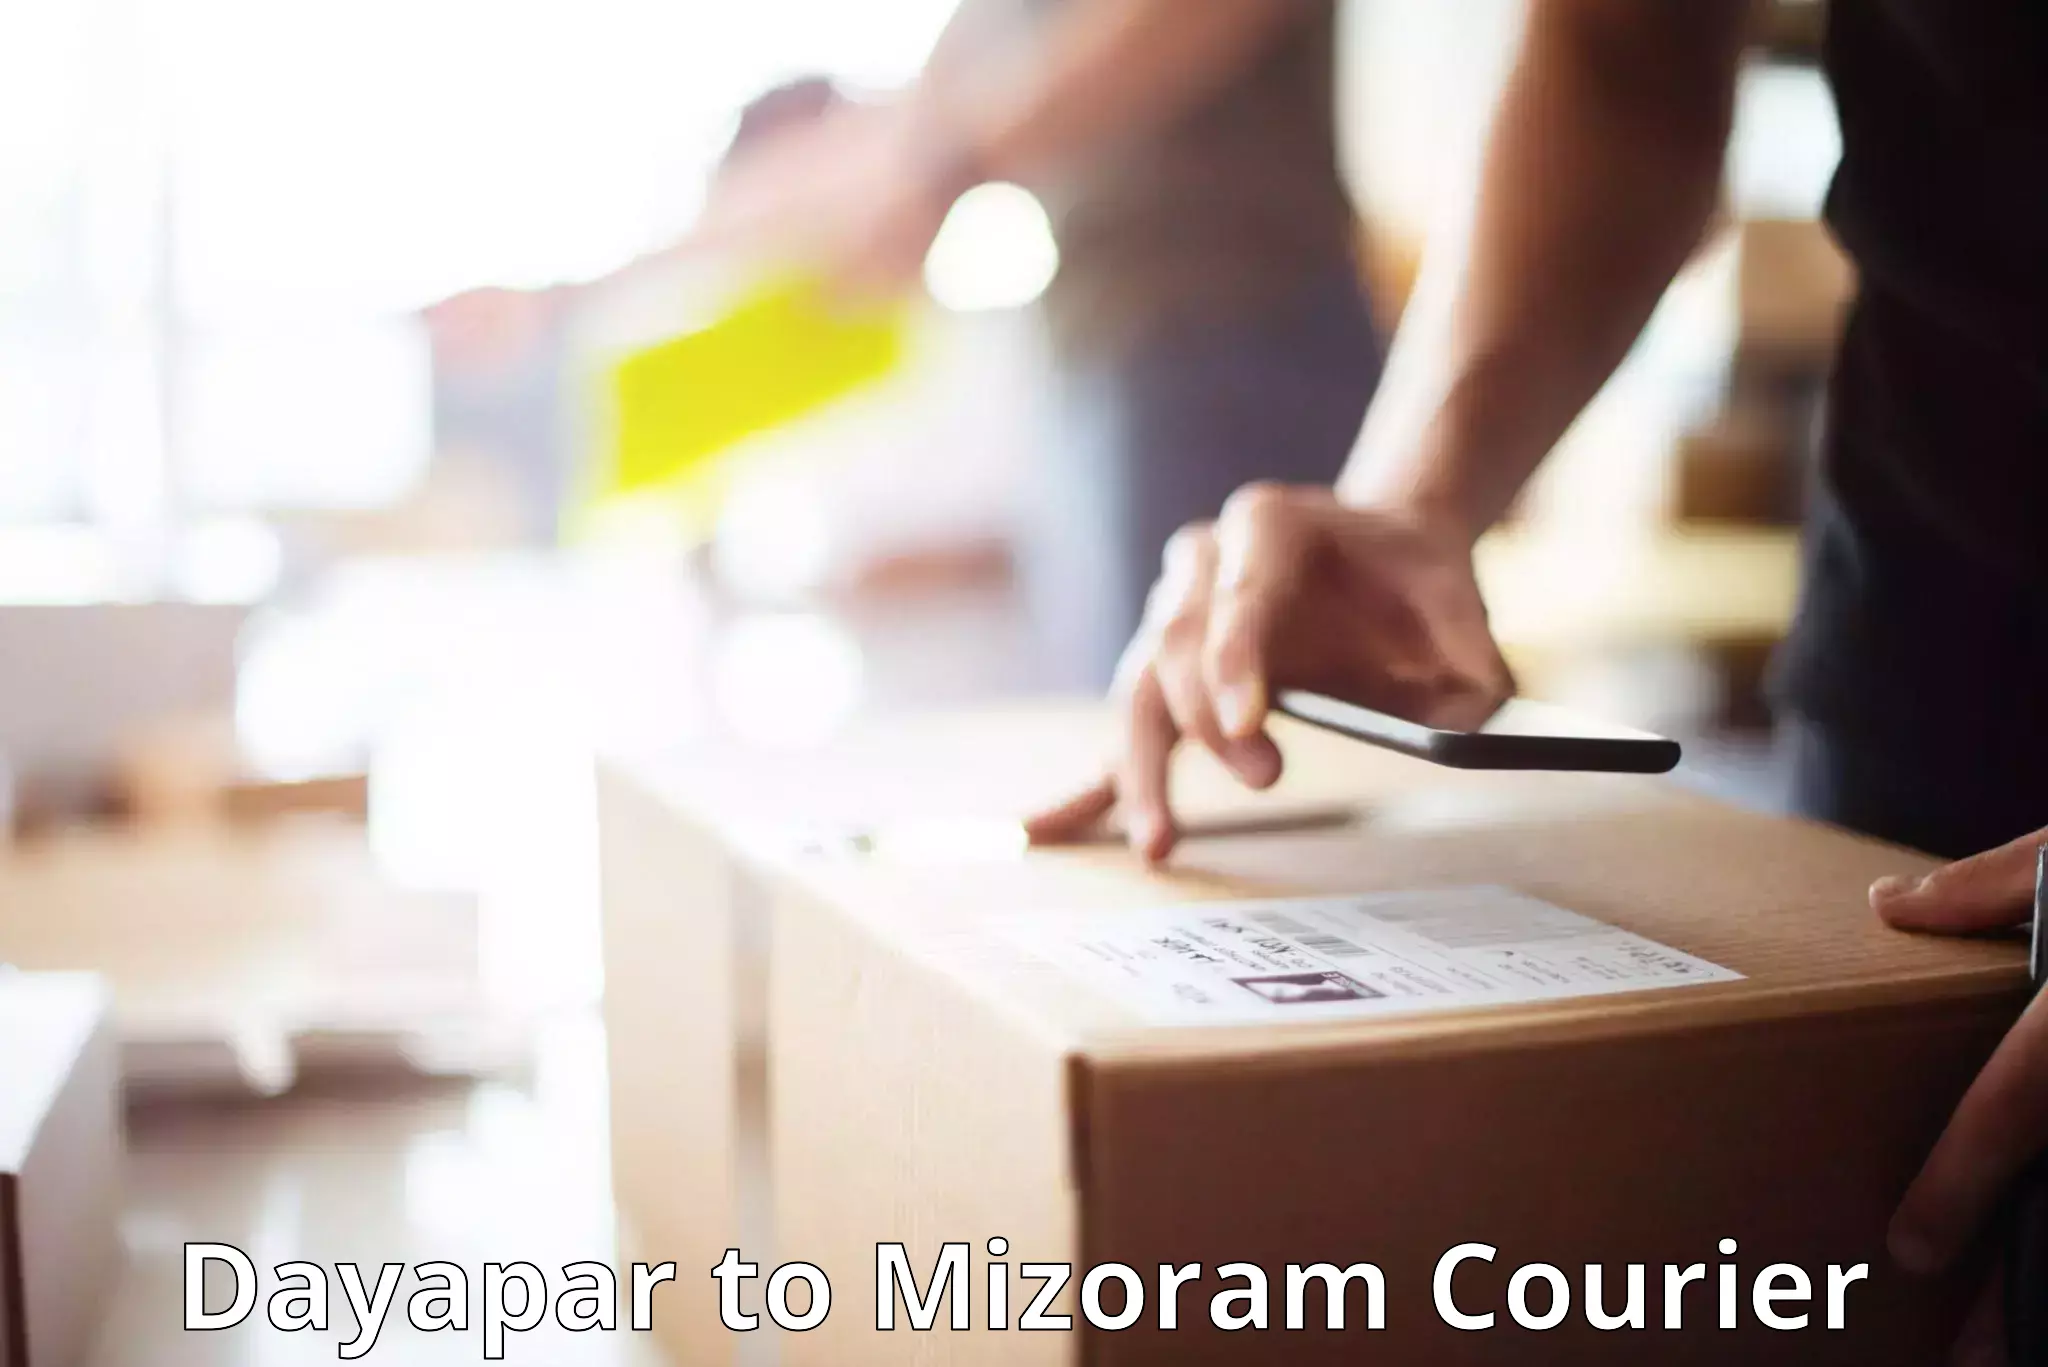 Baggage shipping service Dayapar to Mizoram